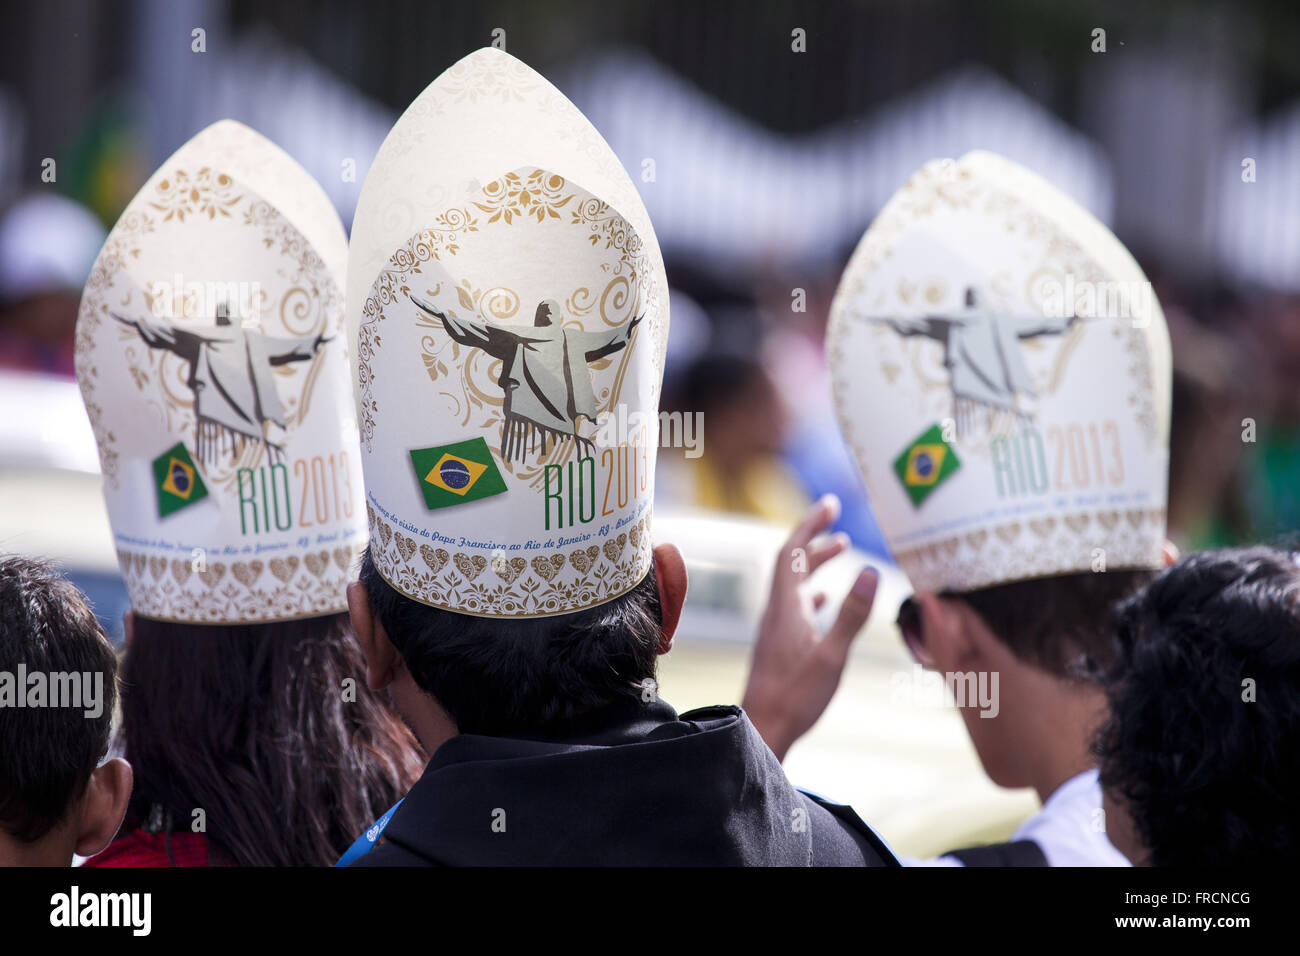 Mitra del papa immagini e fotografie stock ad alta risoluzione - Alamy